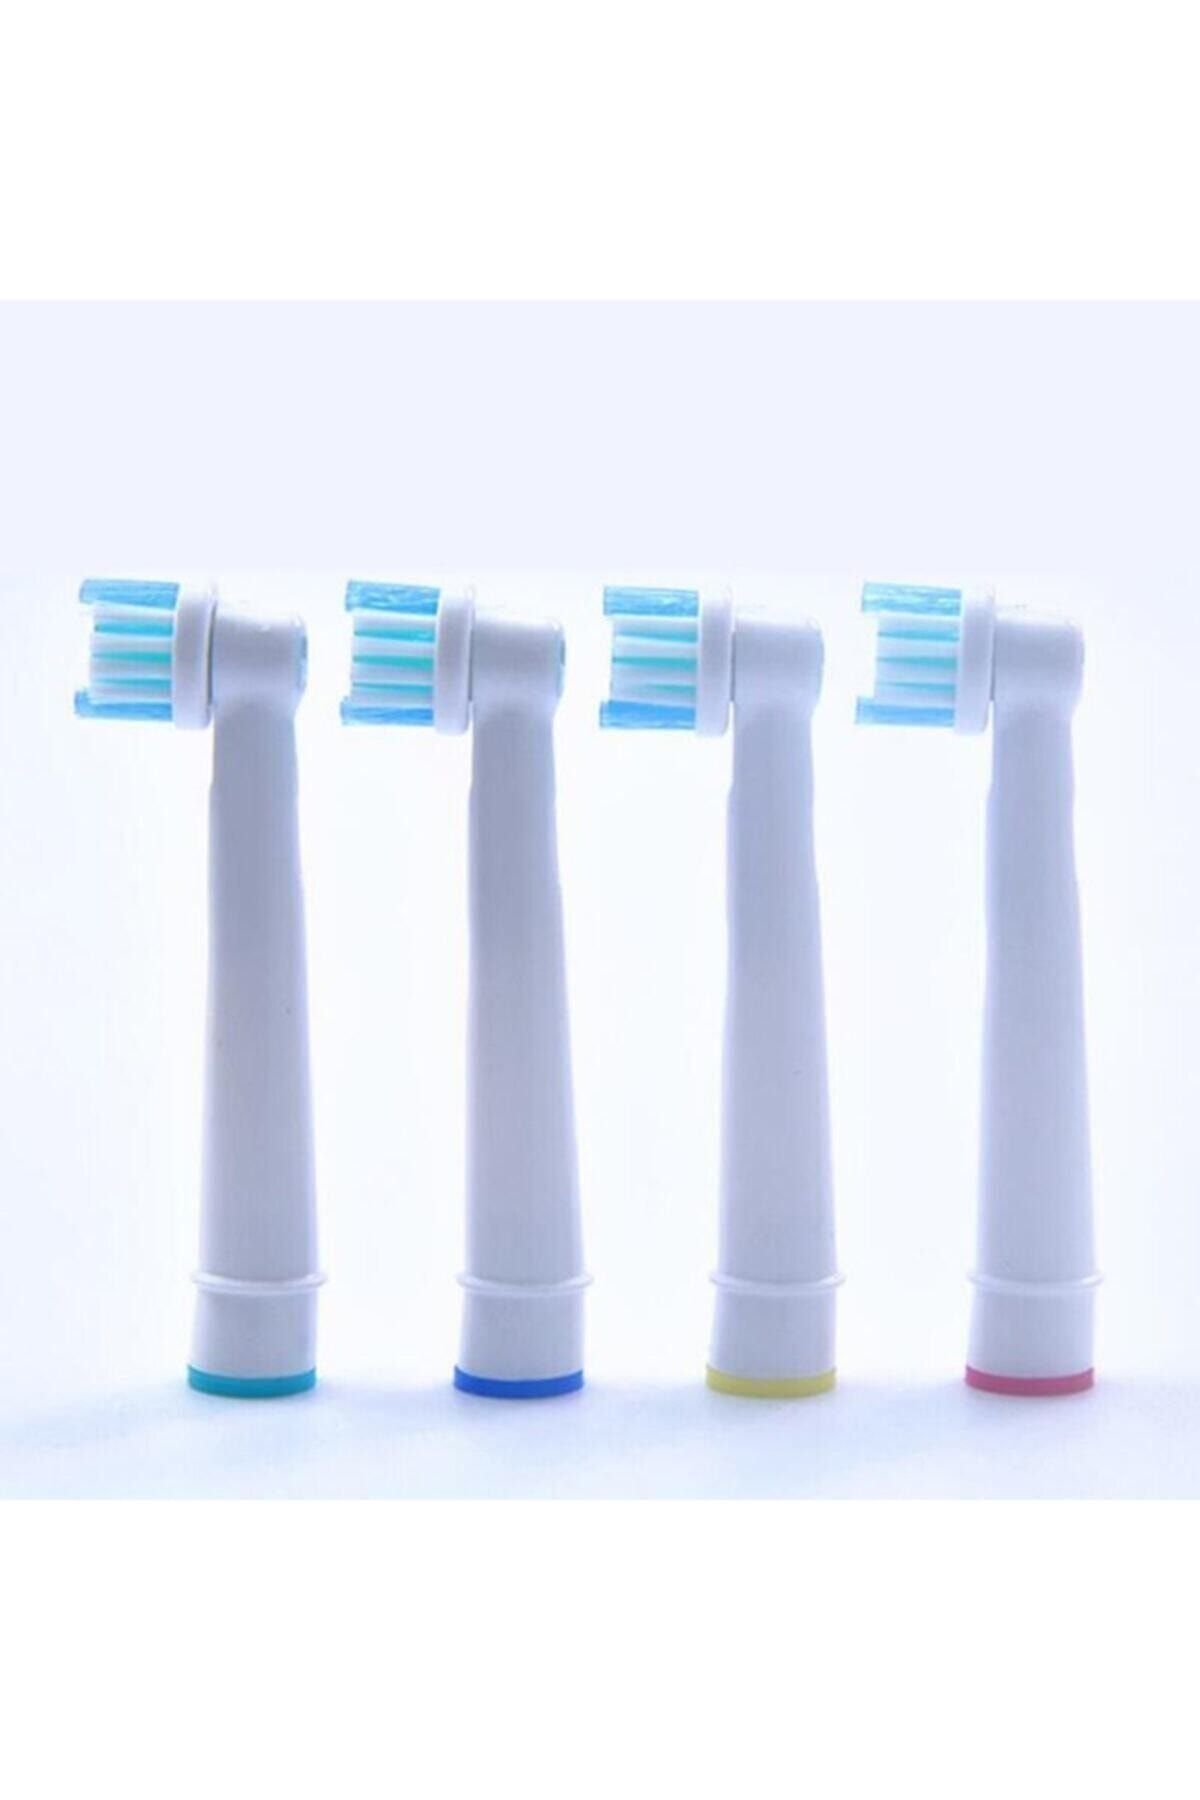 ttoysworld 4 Adet Diş Fırçası Uyumlu Yedek Başlık Ücretsiz Kargo 1 Paket